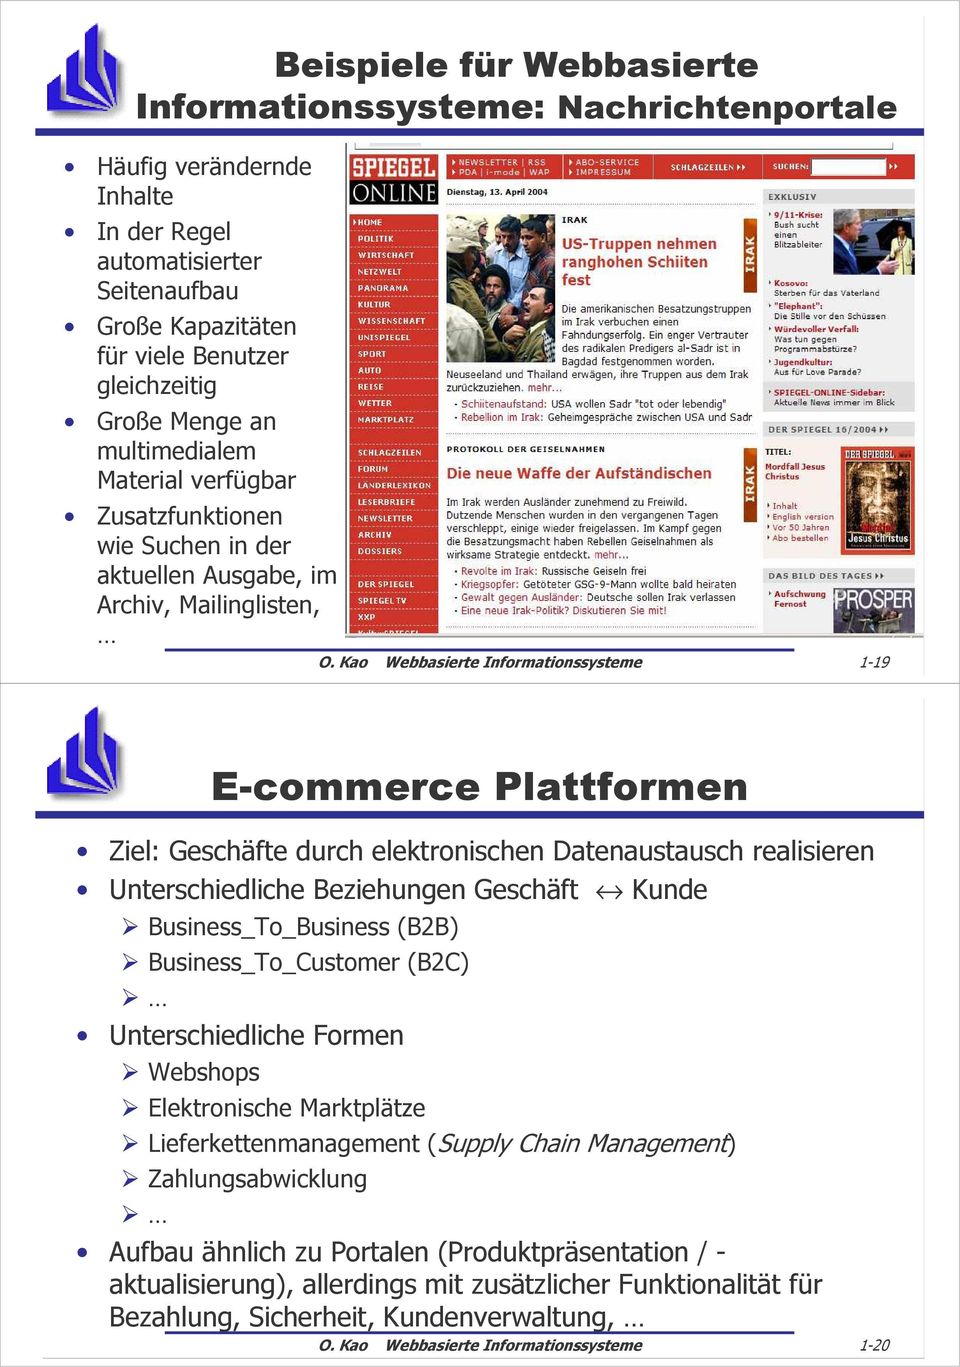 Kao Webbasierte Informationssysteme 1-19 E-commerce Plattformen Ziel: Geschäfte durch elektronischen Datenaustausch realisieren Unterschiedliche Beziehungen Geschäft Kunde Business_To_Business (B2B)